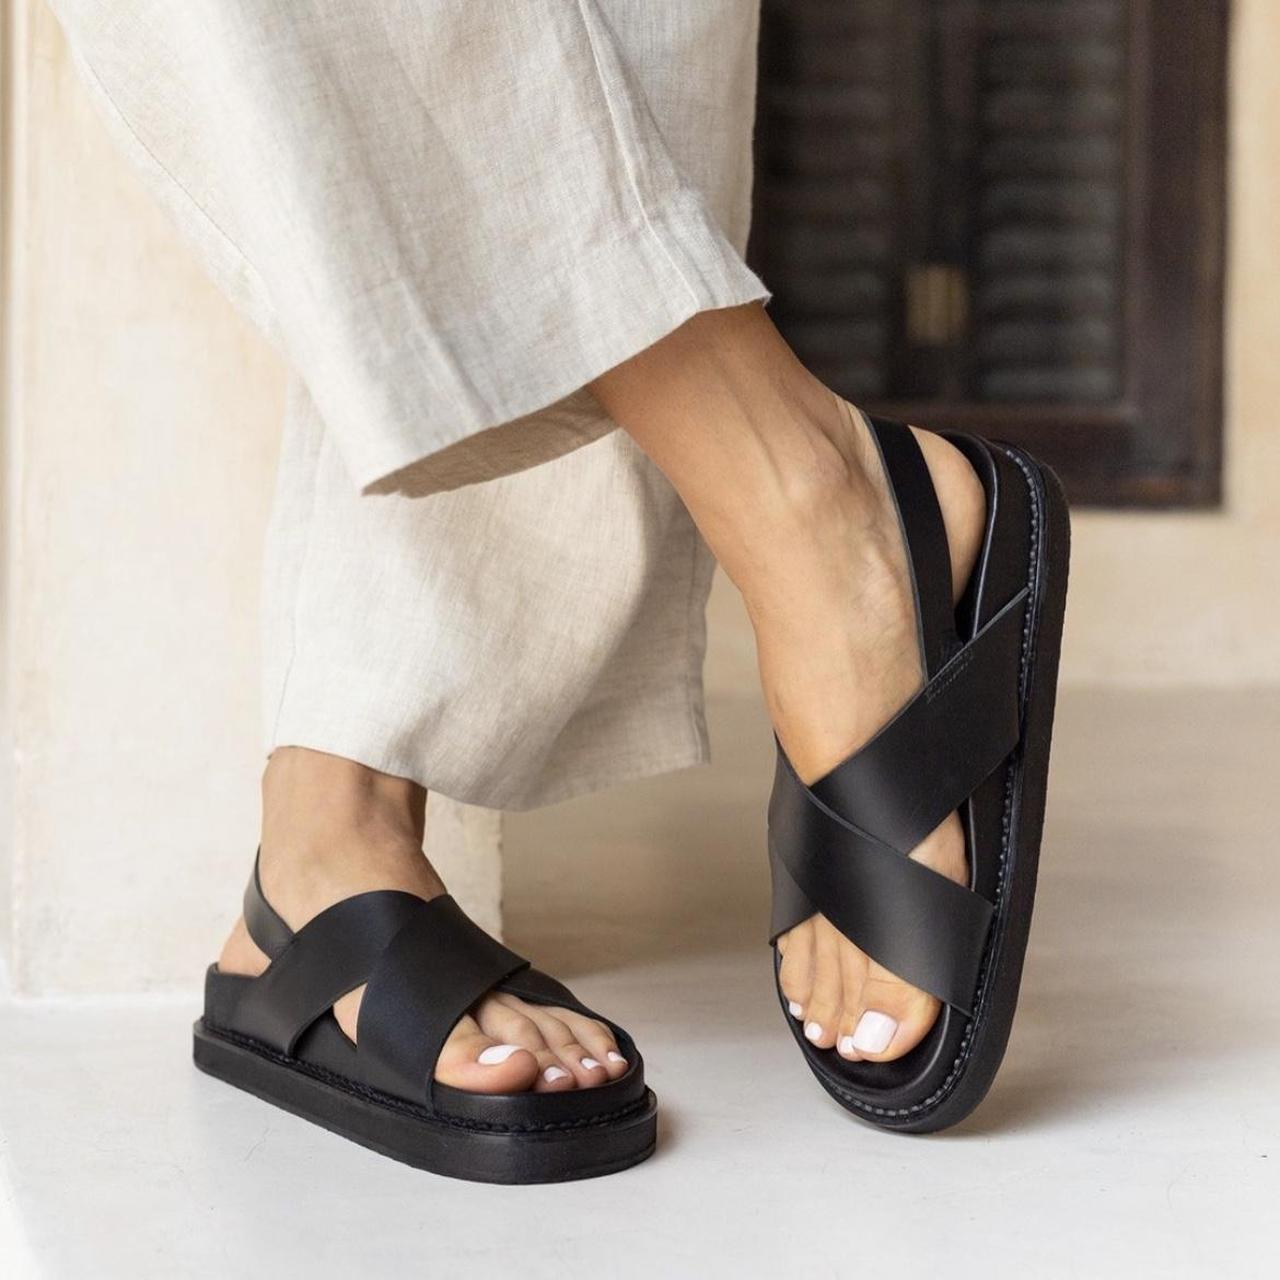 Liberte Capri sandals Size... - Depop